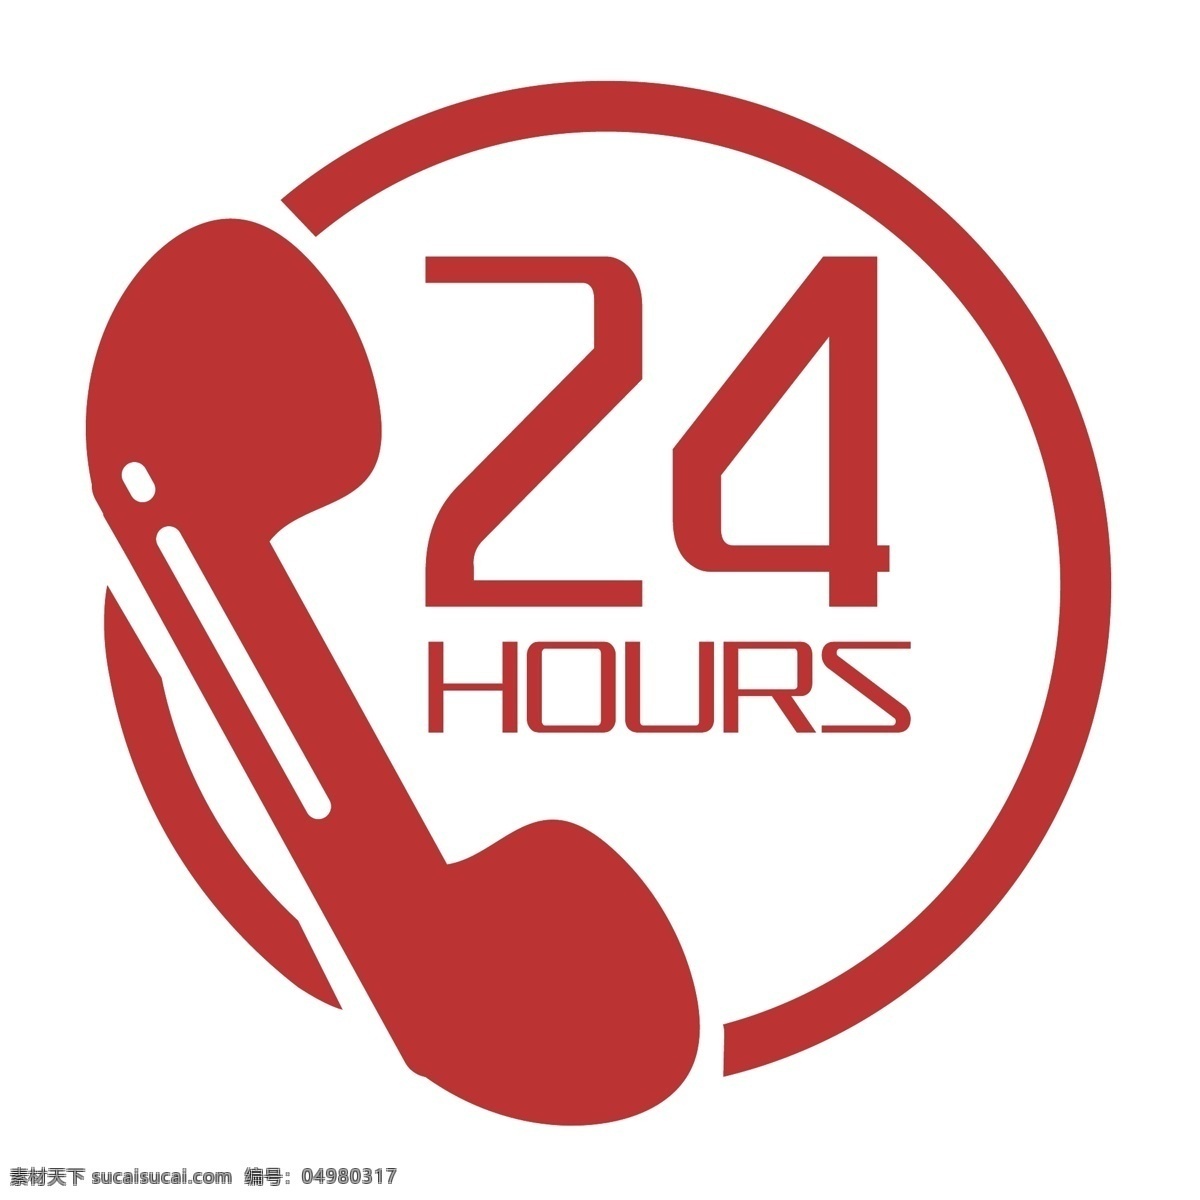 24小时图标 24小时 24小时标志 24小时标识 24小时素材 24小时设计 小时 小 图标 logo 24小时营业 24小时在线 24小时服务 24小时值班 二十四小时 二十四 时钟 时钟图标 时钟小图标 时间 时间标志 时间图标 电话客服